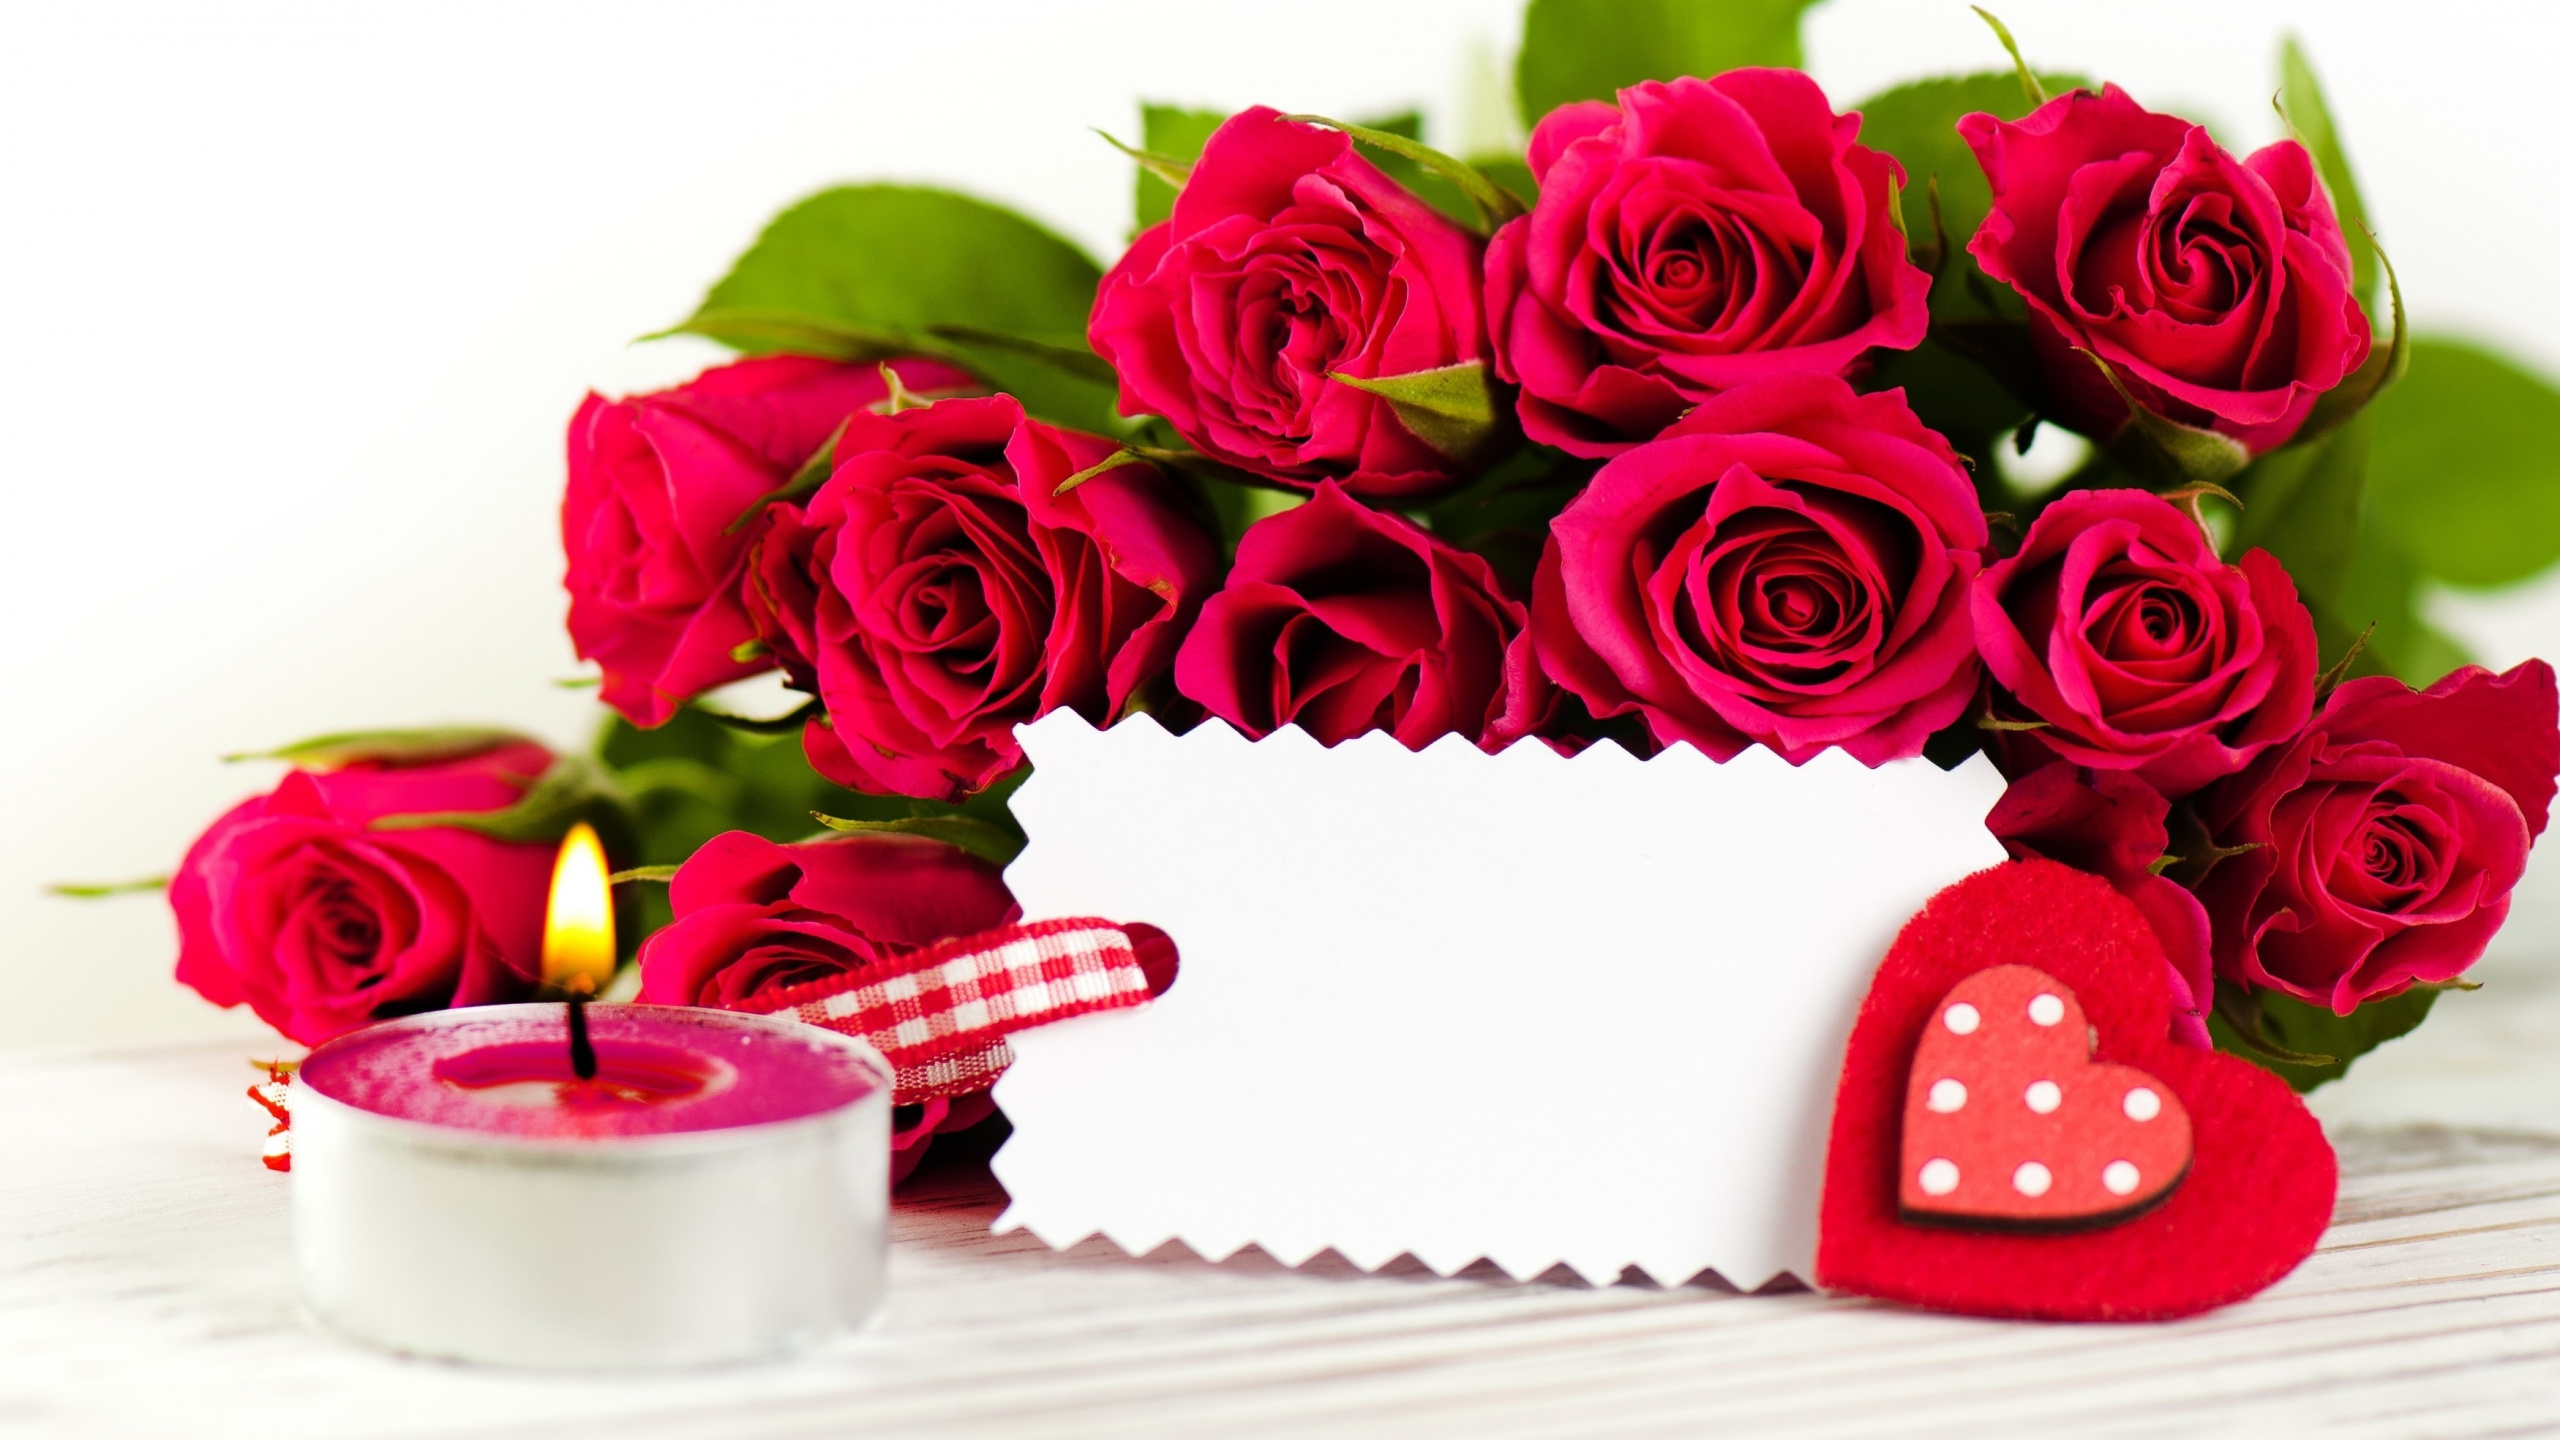 Обои цветок, Роза, срезанные цветы, сад роз, семья Роуз в разрешении 2560x1440